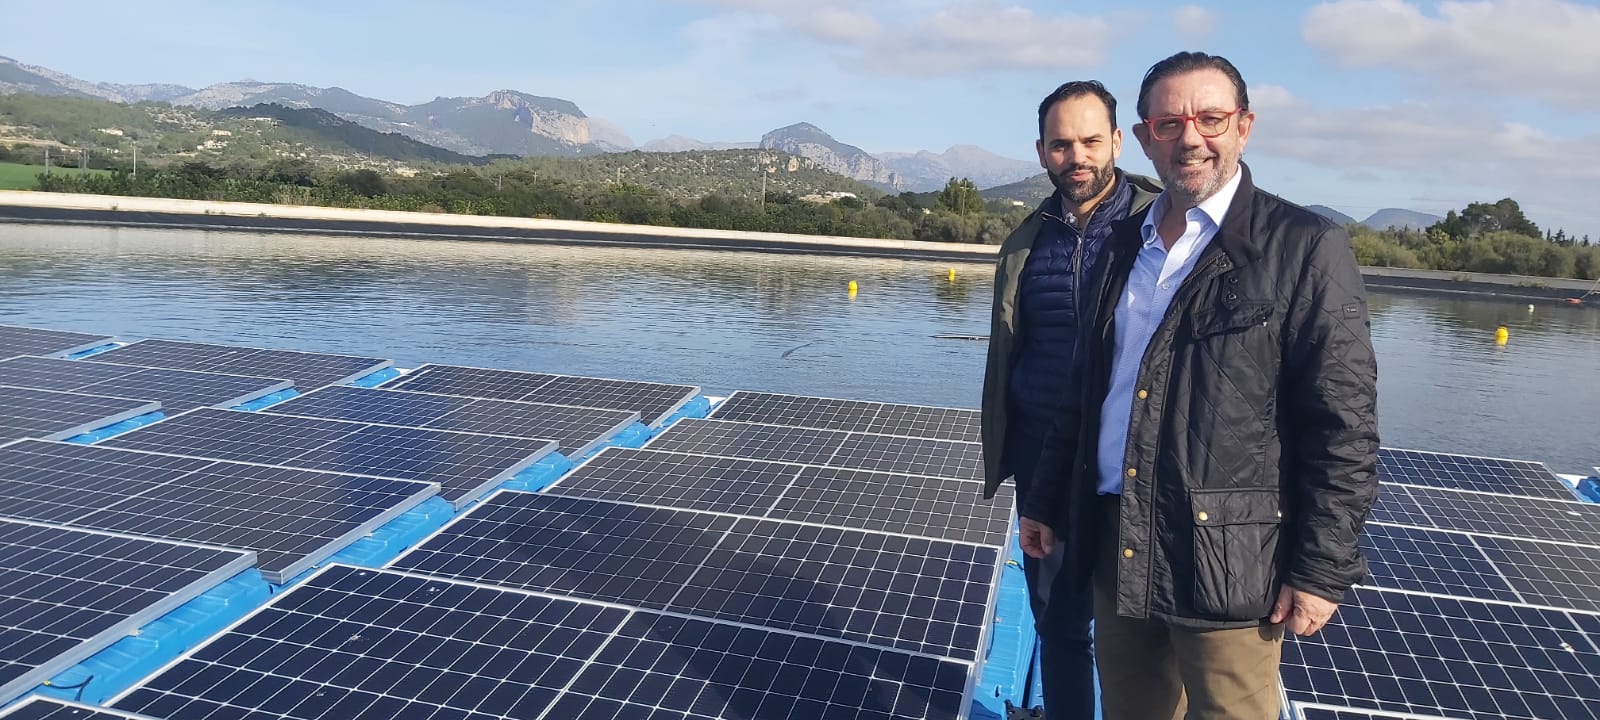 En marxa la primera instal·lació fotovoltaica que sura sobre una bassa de reg de Consell